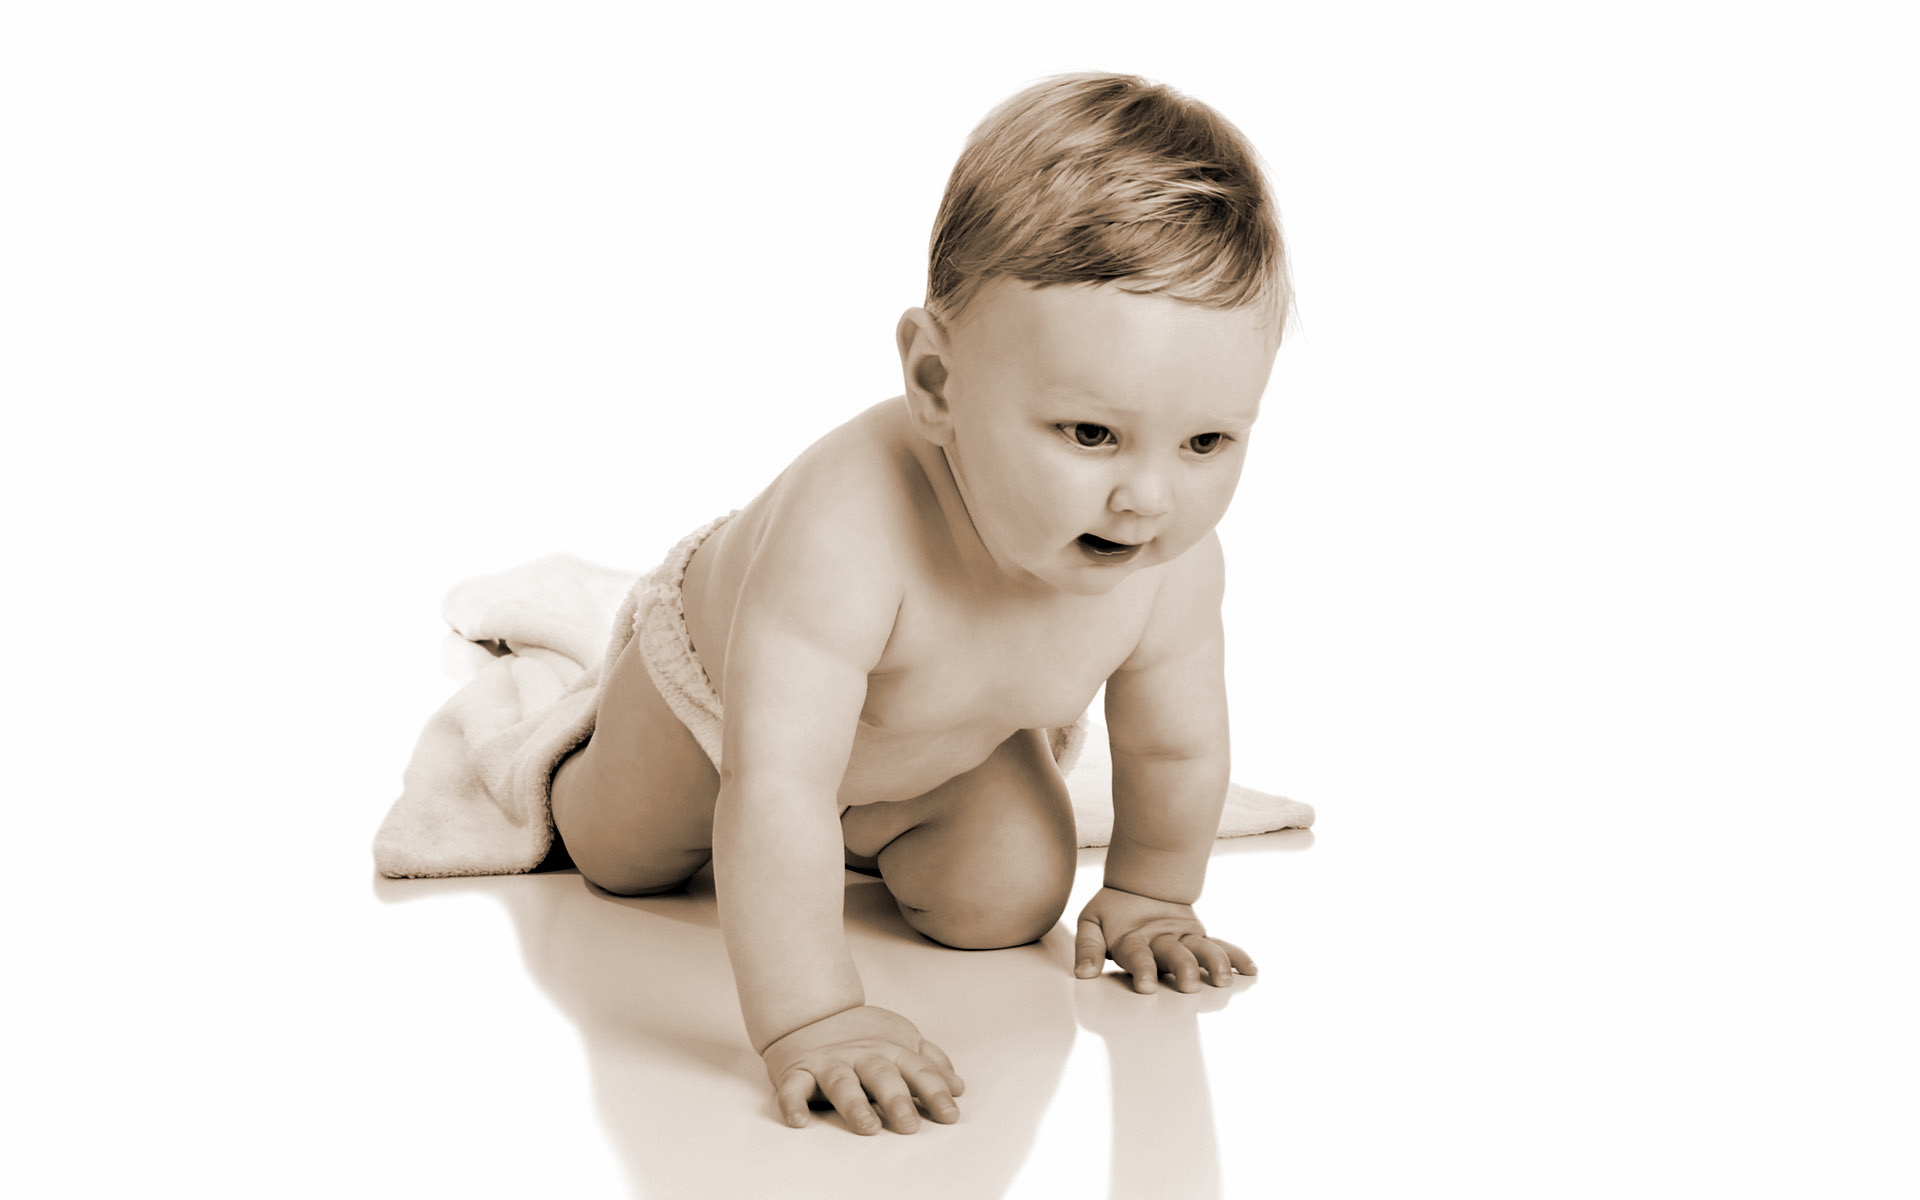 壁纸1920x1200人体艺术图片 婴儿 壁纸15壁纸 人体艺术图片（婴儿）壁纸 人体艺术图片（婴儿）图片 人体艺术图片（婴儿）素材 系统壁纸 系统图库 系统图片素材桌面壁纸